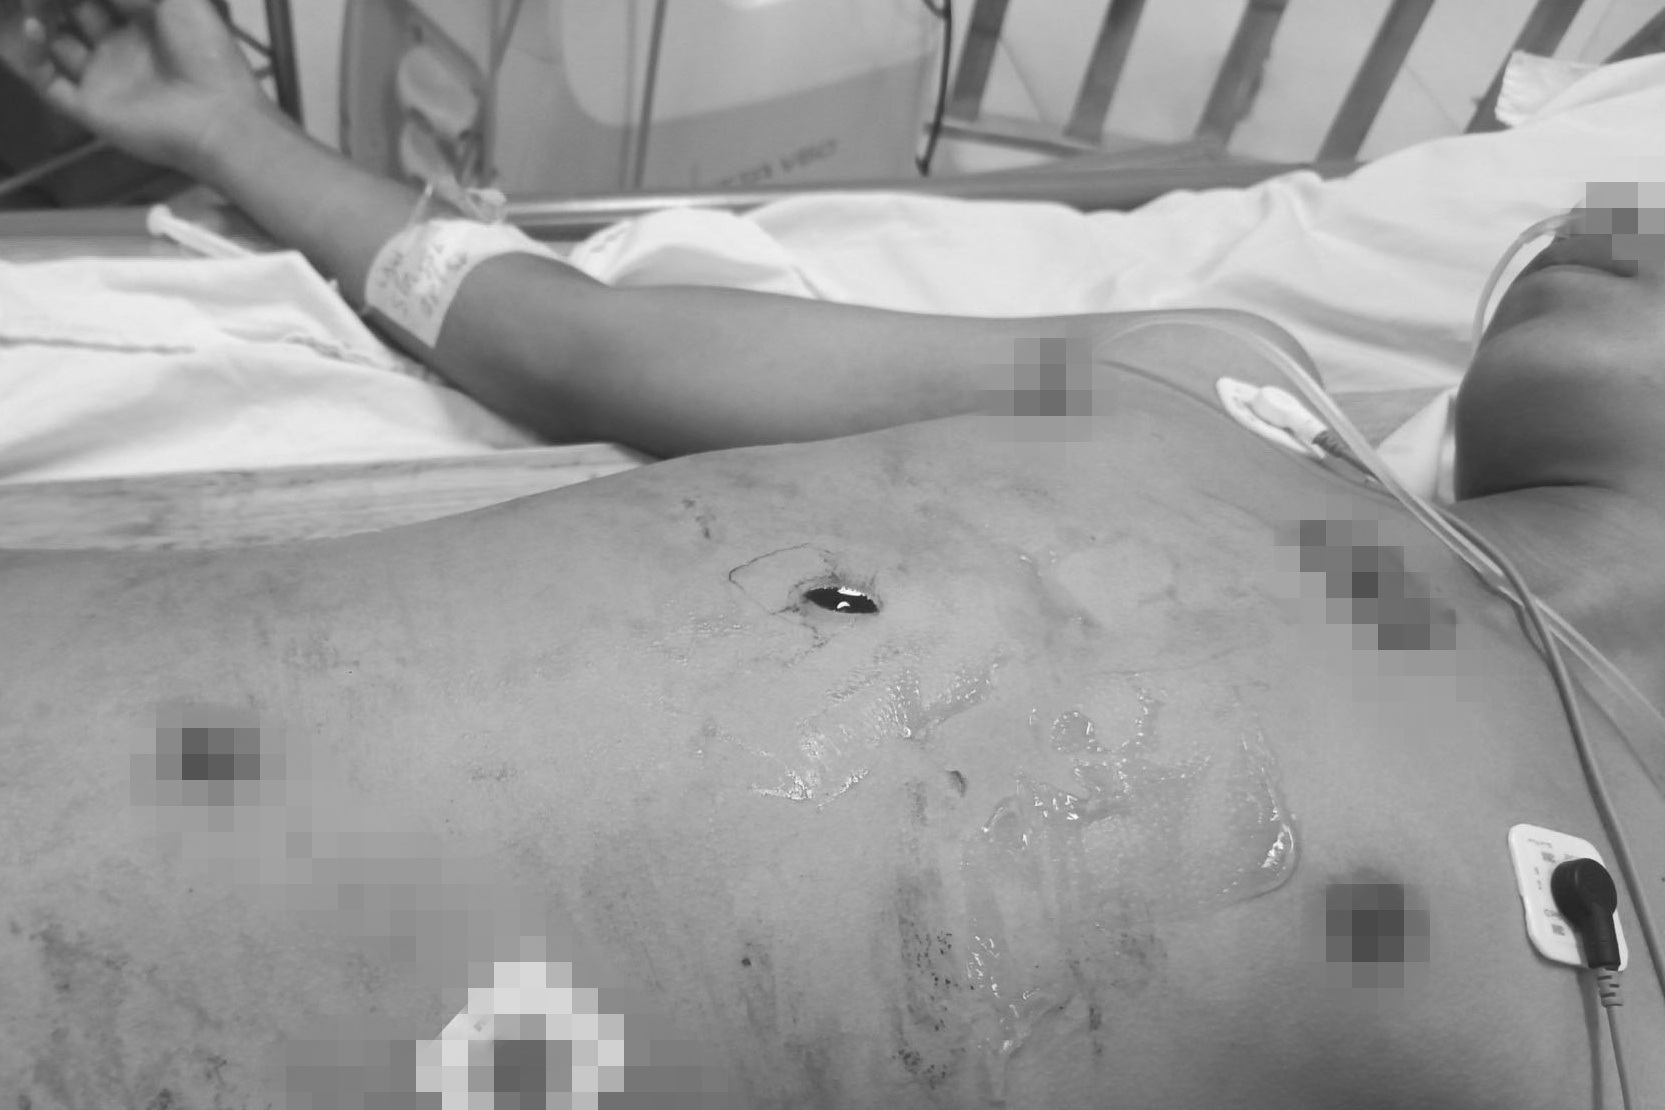 Thiếu niên 15 tuổi bị đâm dao xuyên từ bụng lên lồng ngực - Ảnh 1.